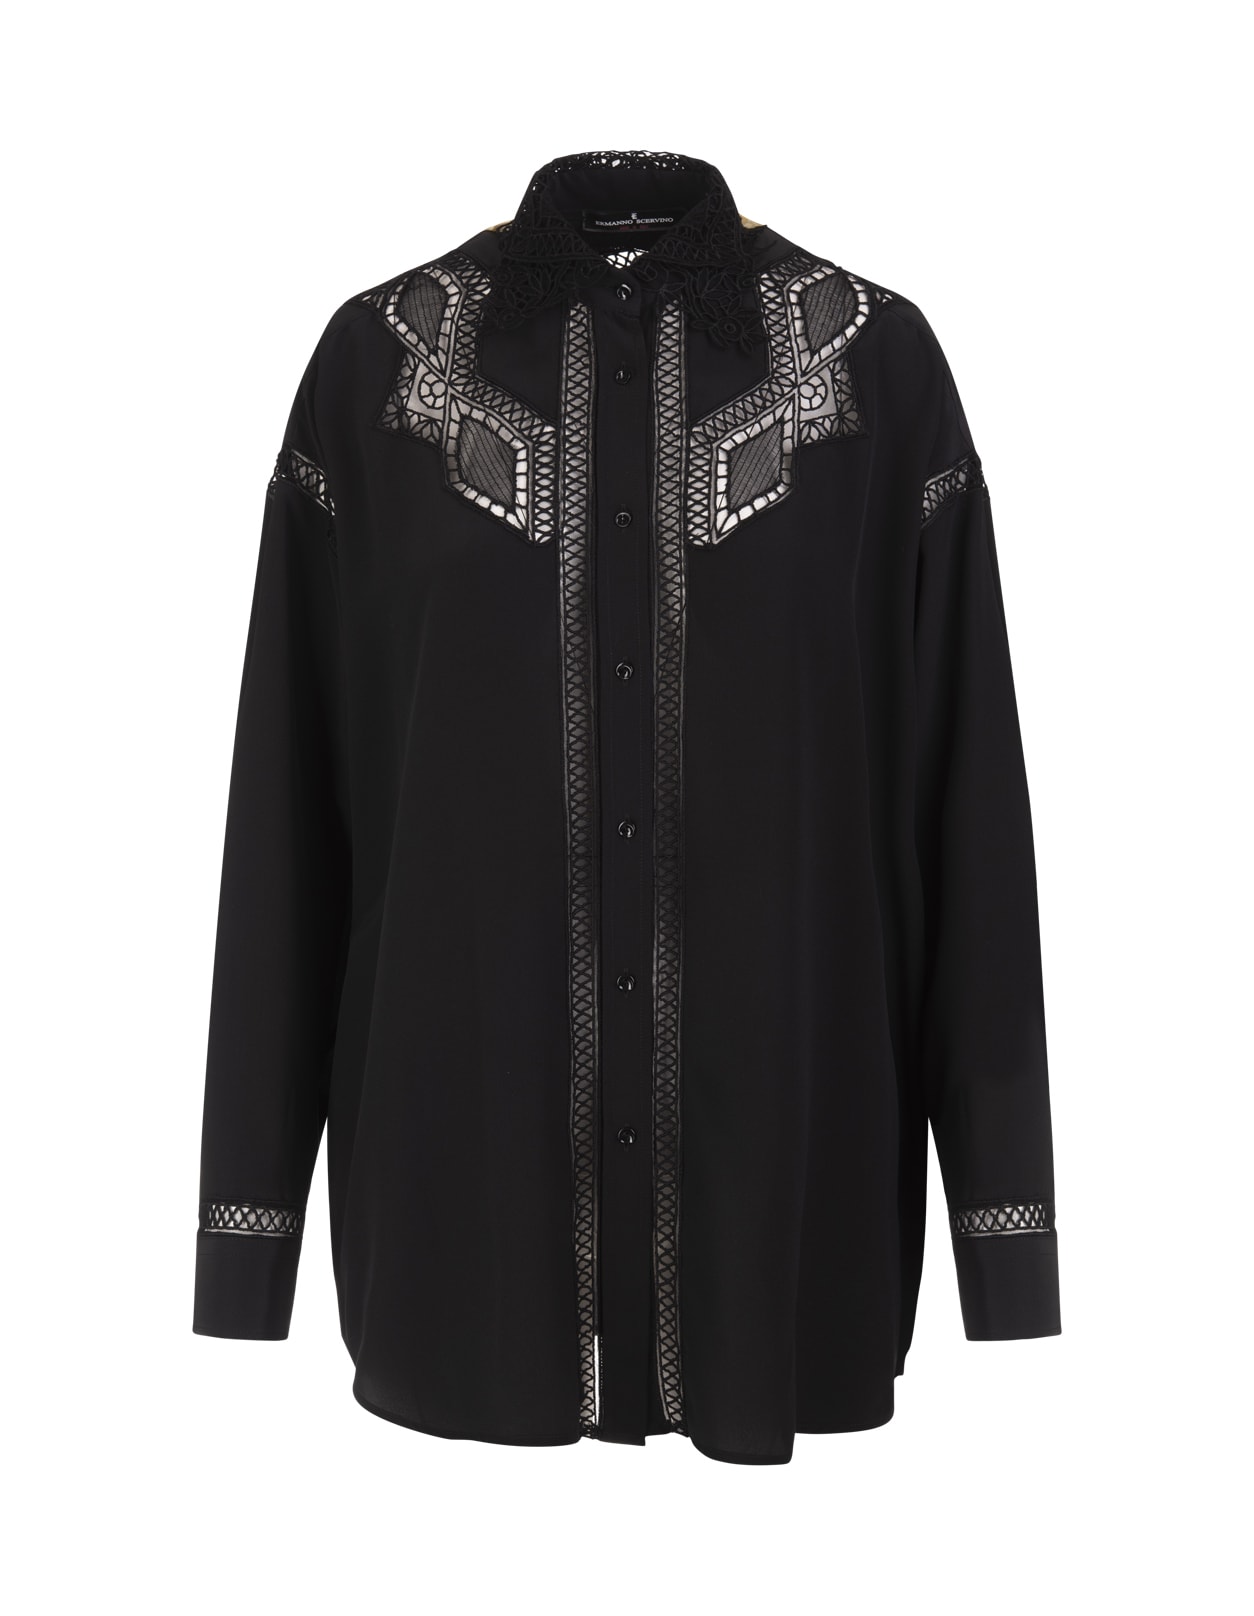 Ermanno Scervino Black Silk Shirt With Intaglio Lace